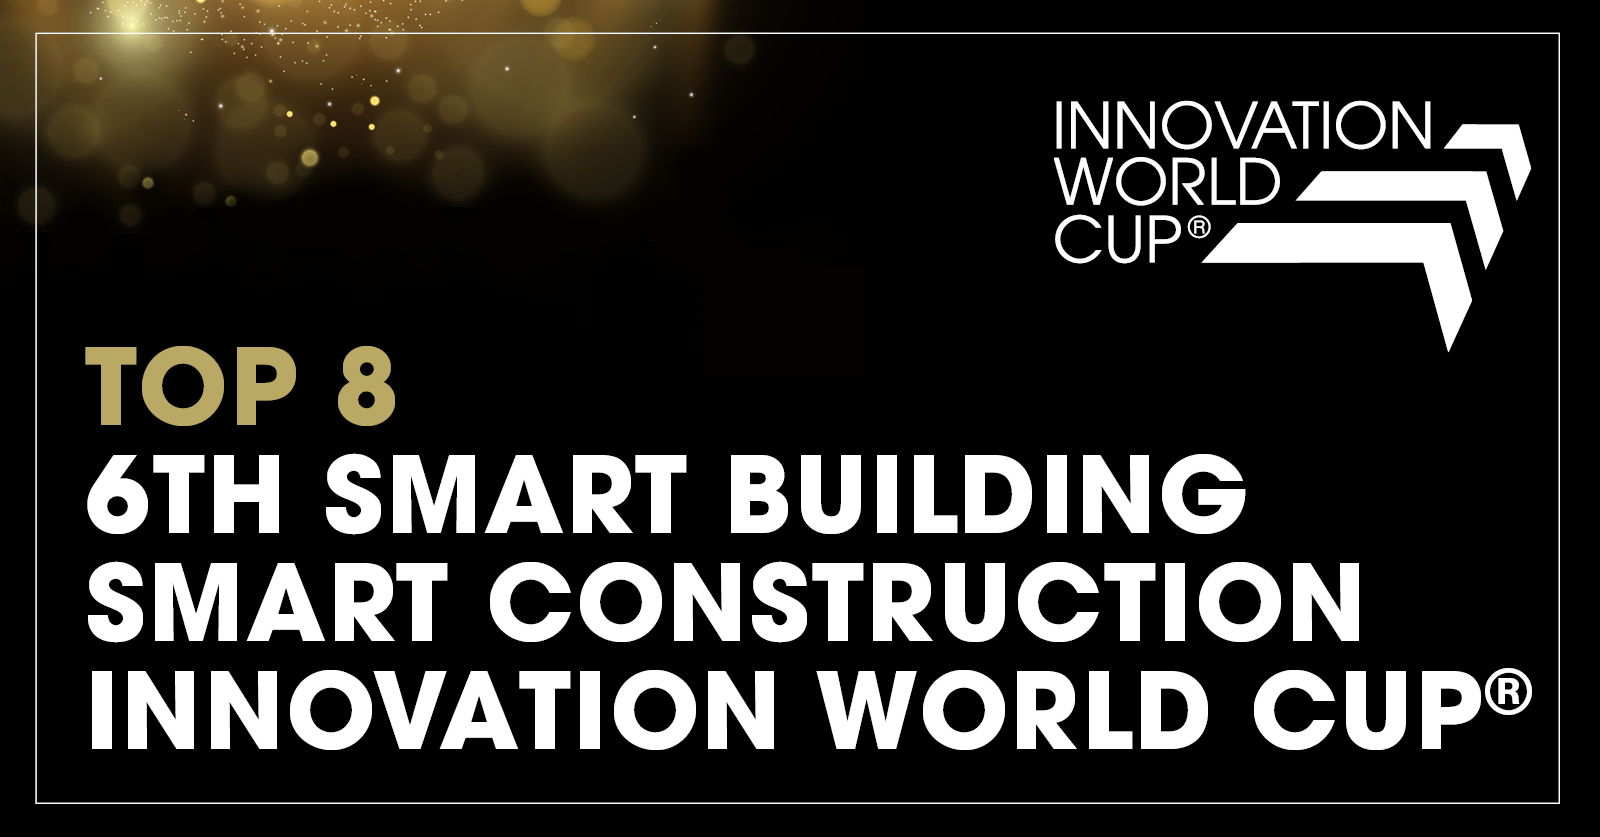 Tại World Cup Đổi mới © 2023 ở Munich, chuyên gia HVAC Châu Âu Hysopt đã được công nhận là một trong những Nhà cải tiến Xây dựng Thông minh và Tòa nhà Thông minh hàng đầu thế giới.